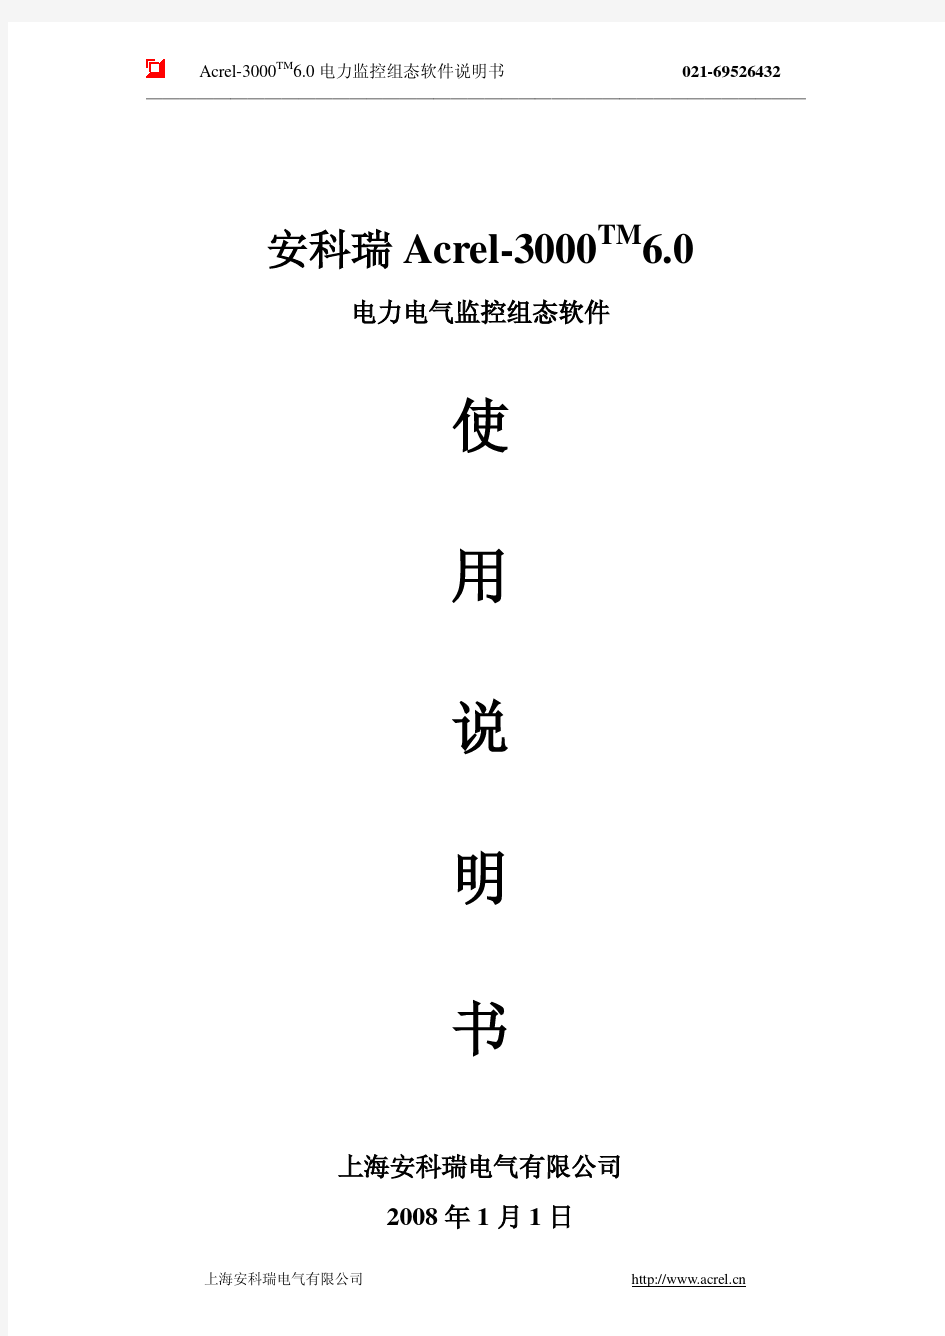 安科瑞Acrel-3000 6.0说明书